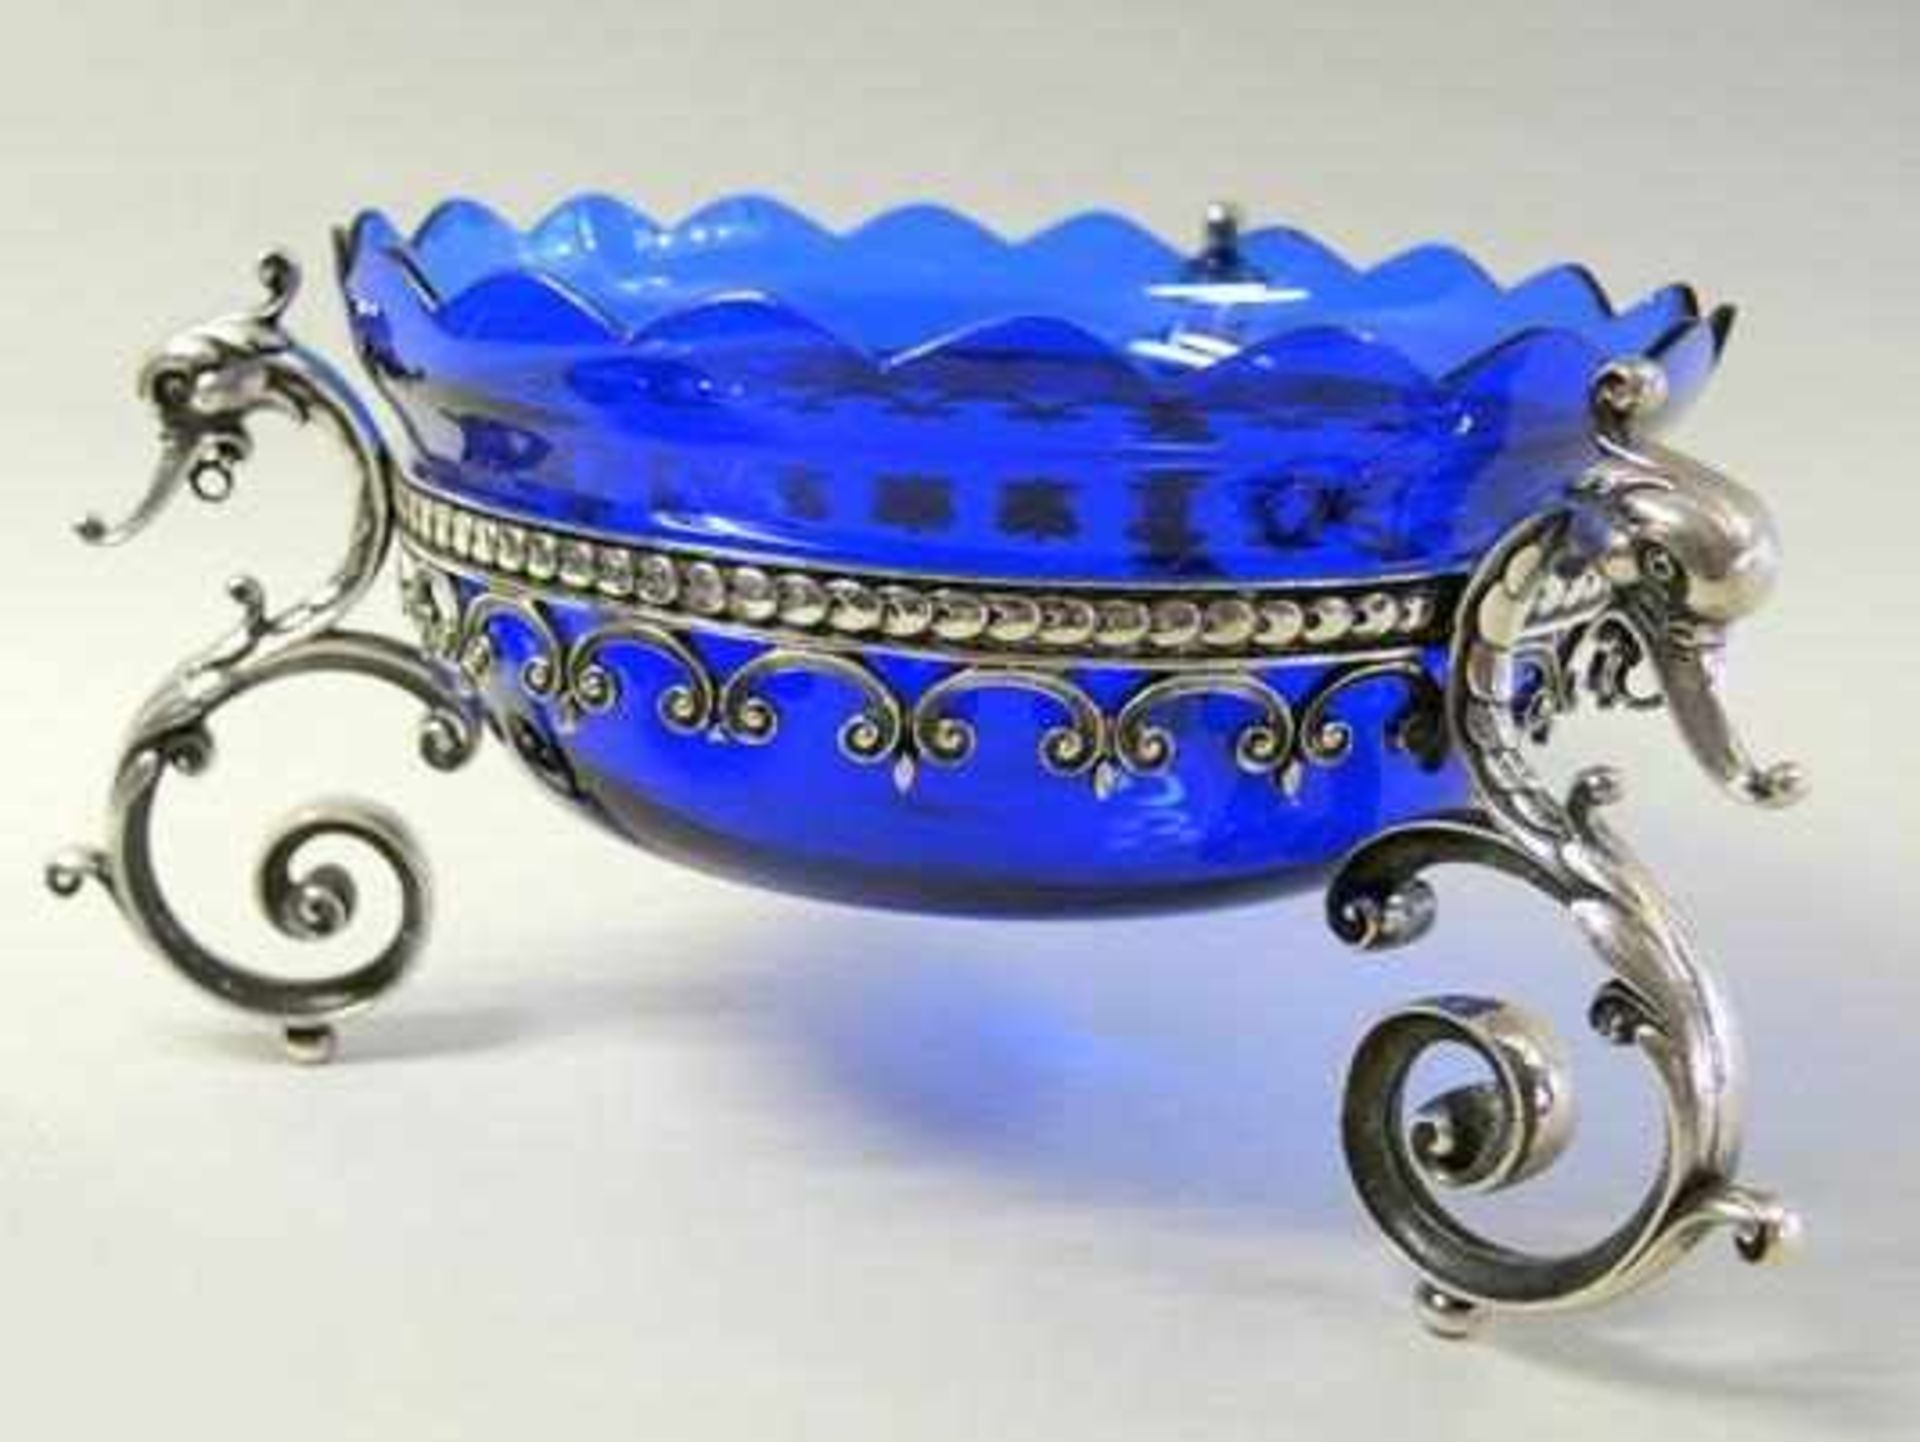 Große Schale Silber plated und kobaltblaues Glas, auf drei Seepferdchen-Füßen stehende Schale, mit